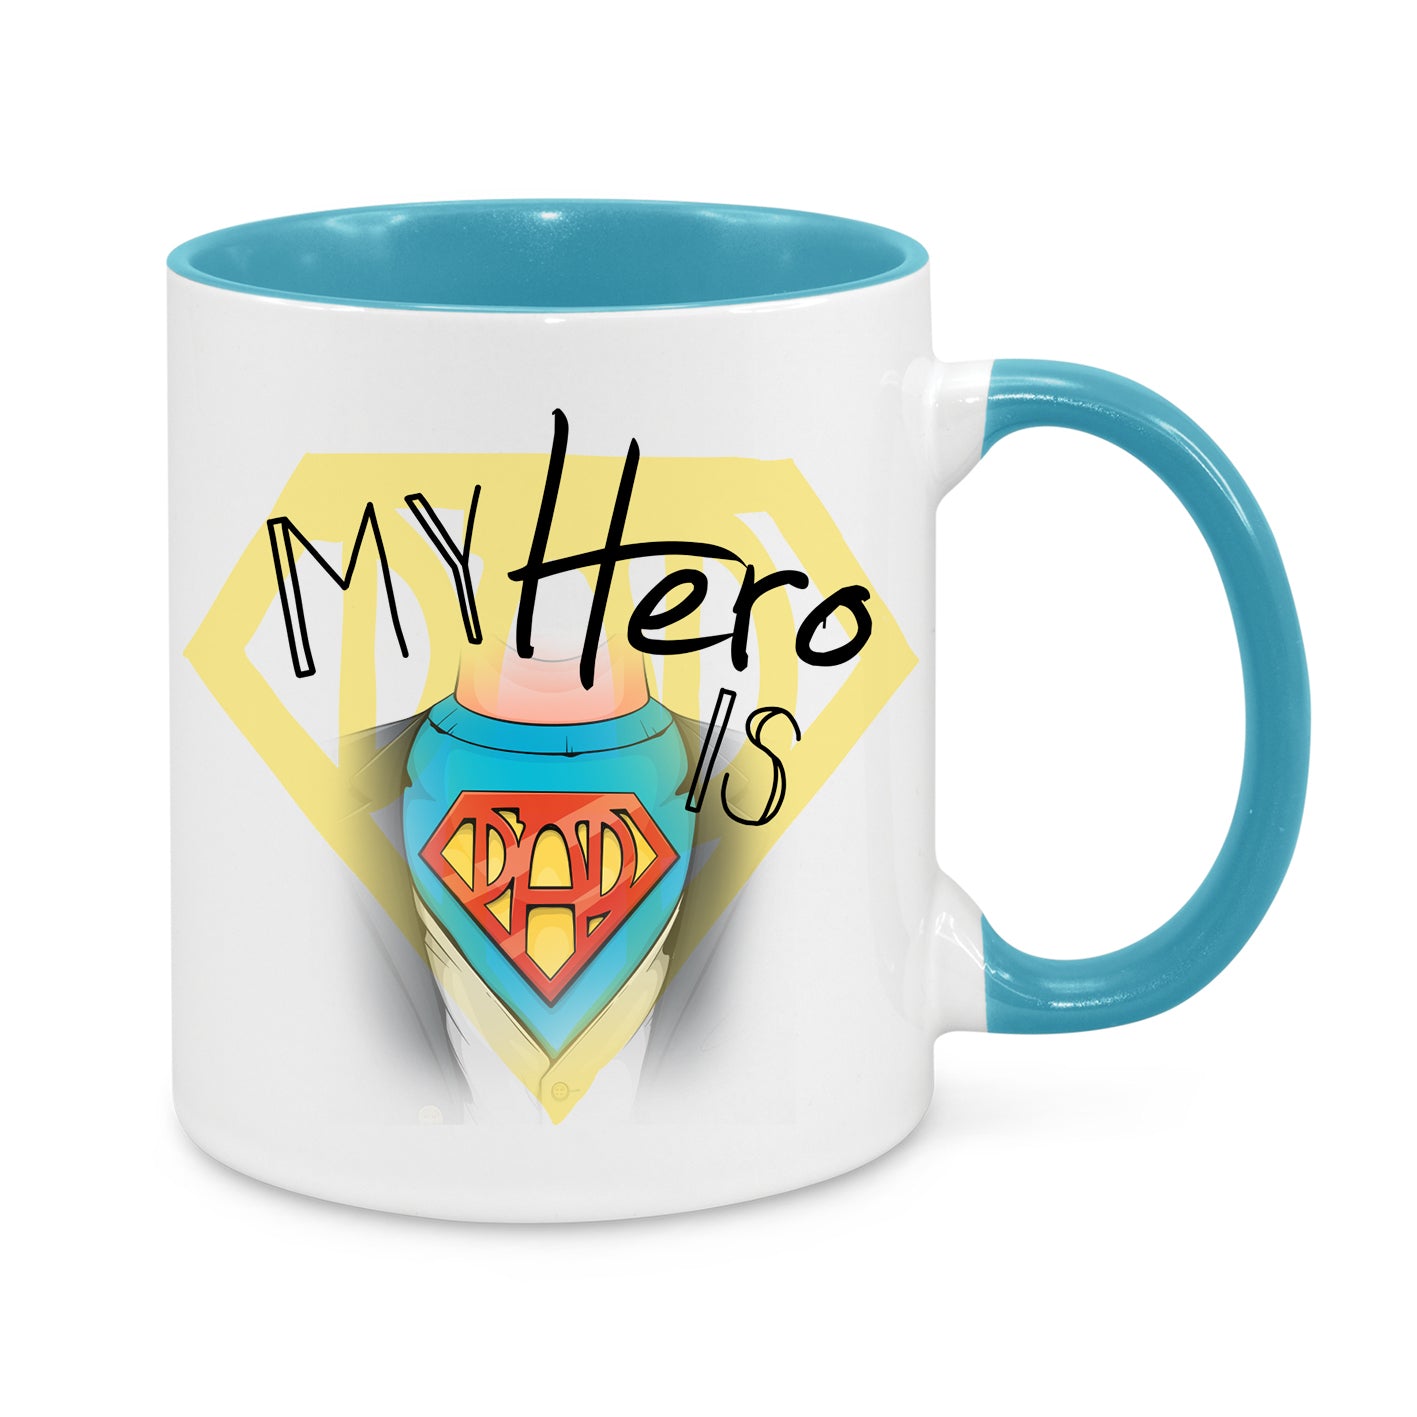 My Hero Is Dad Novelty Mug